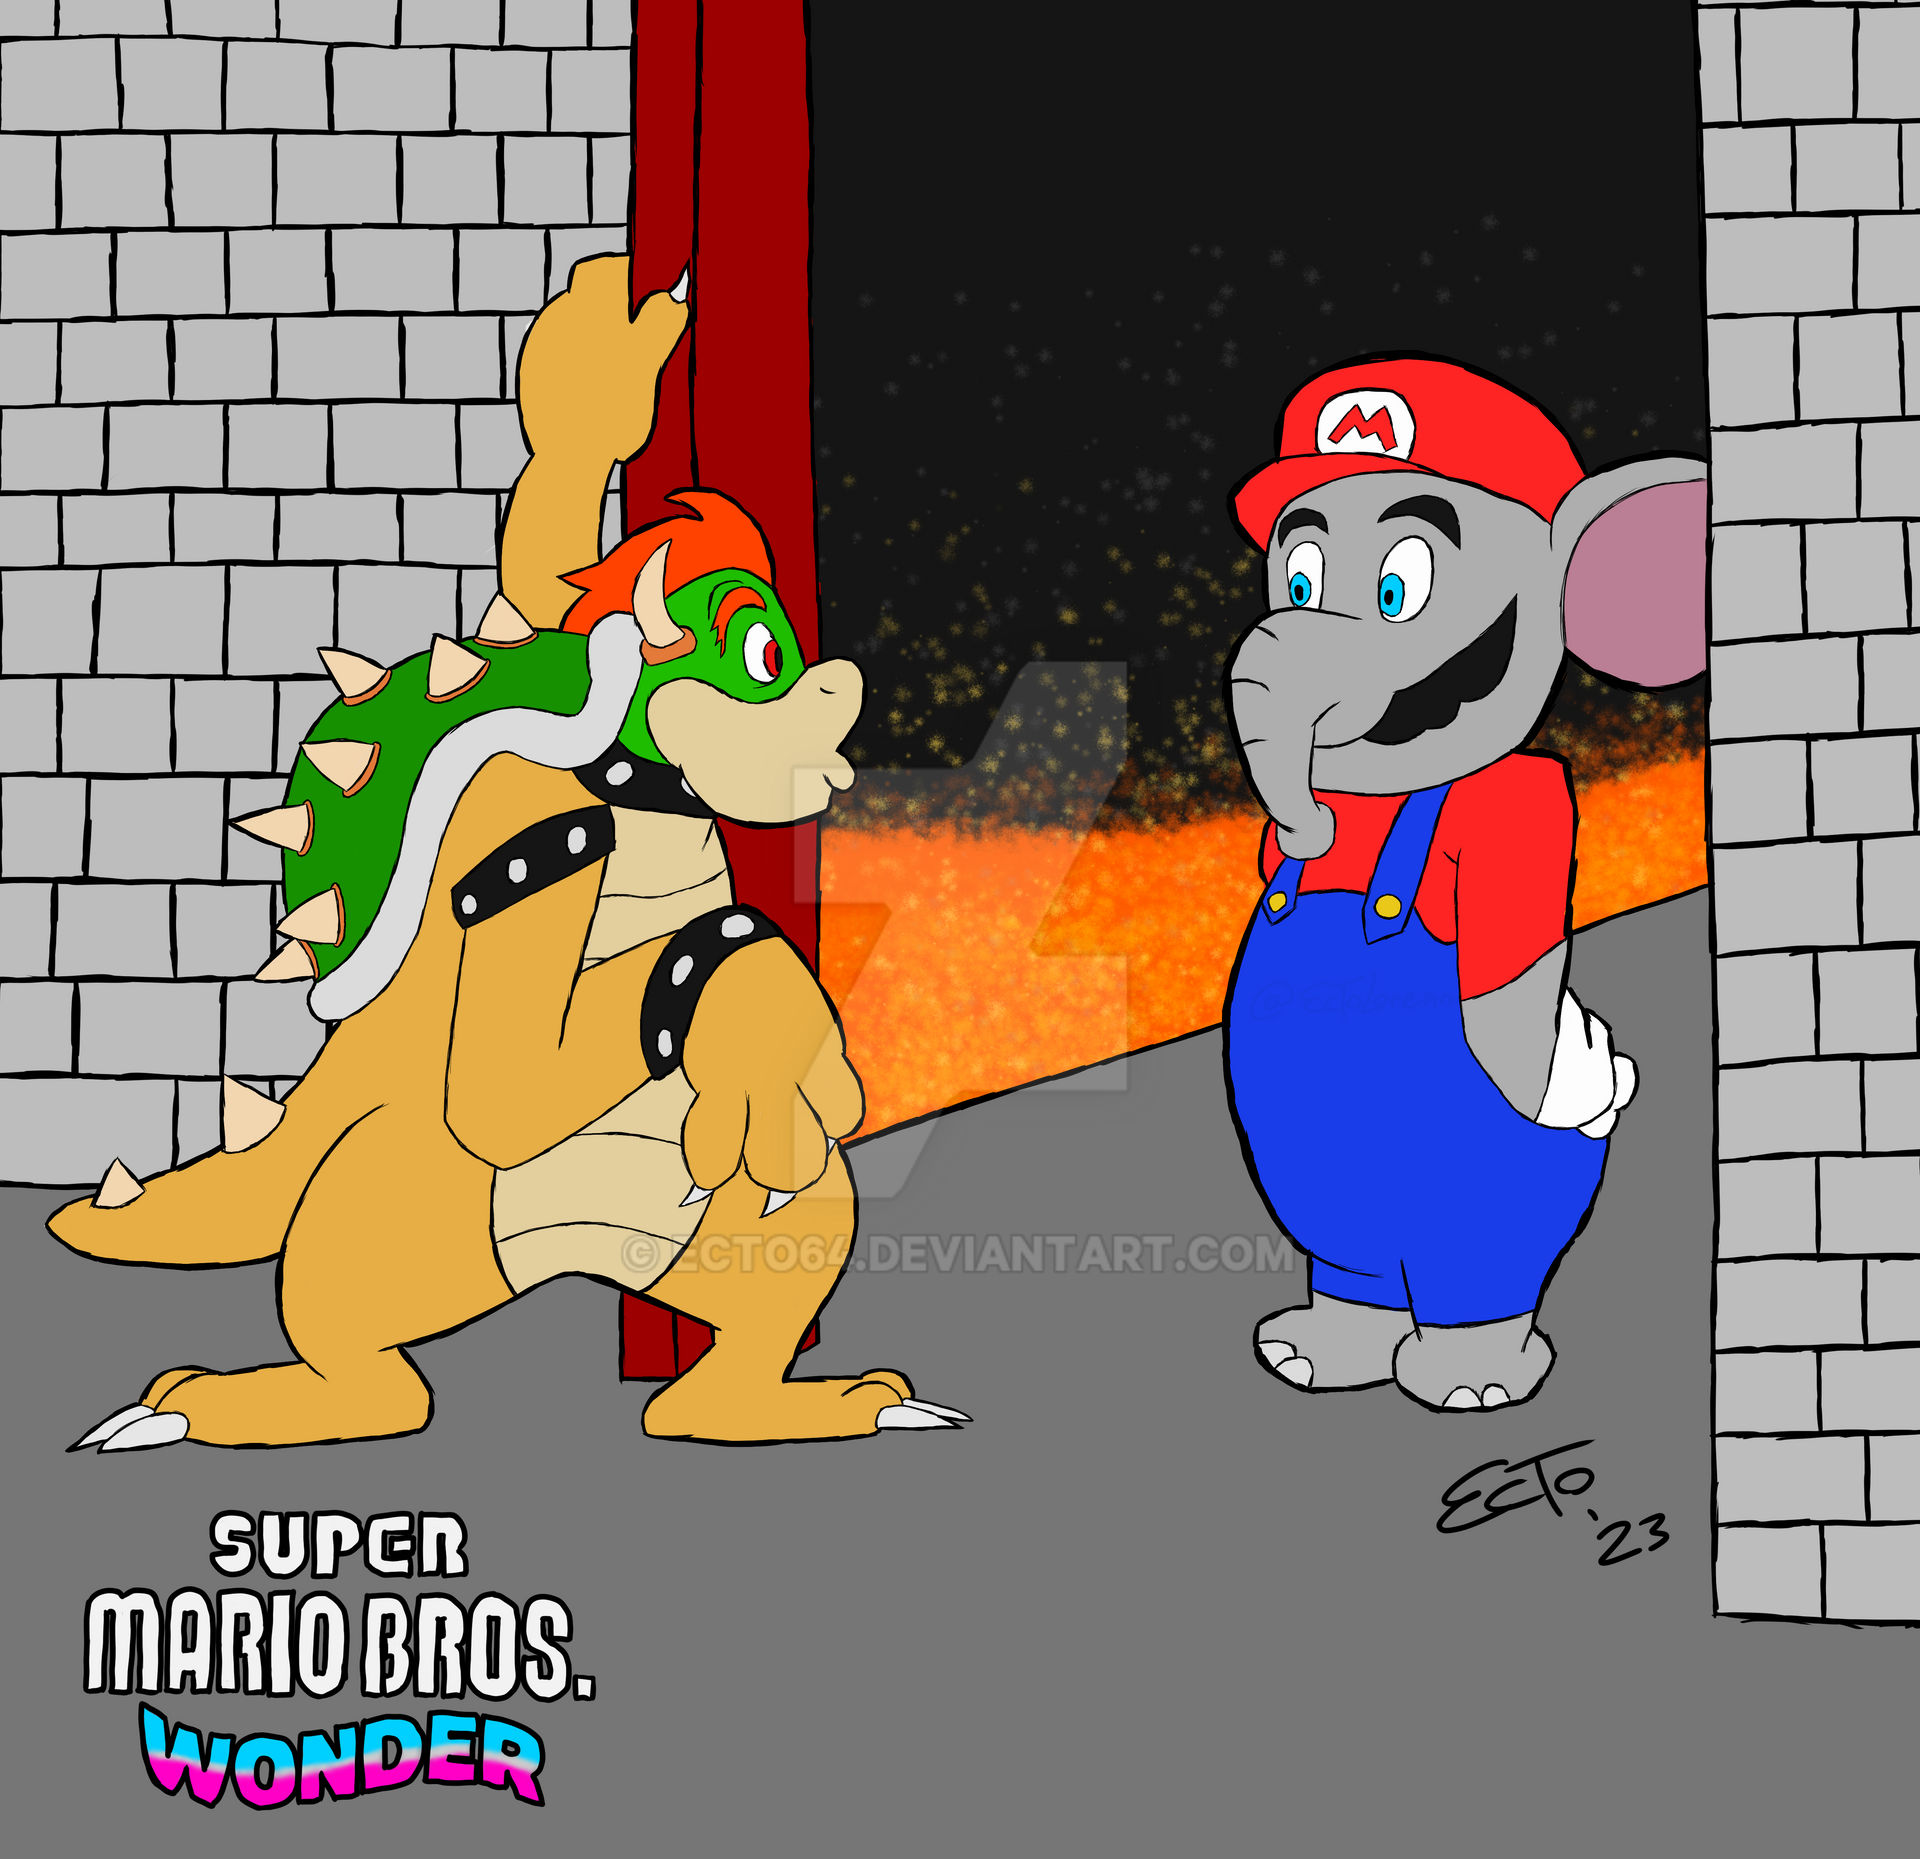 Super Mario Bros Wonder (Nintendo Switch, 2023) by ecto64 on DeviantArt